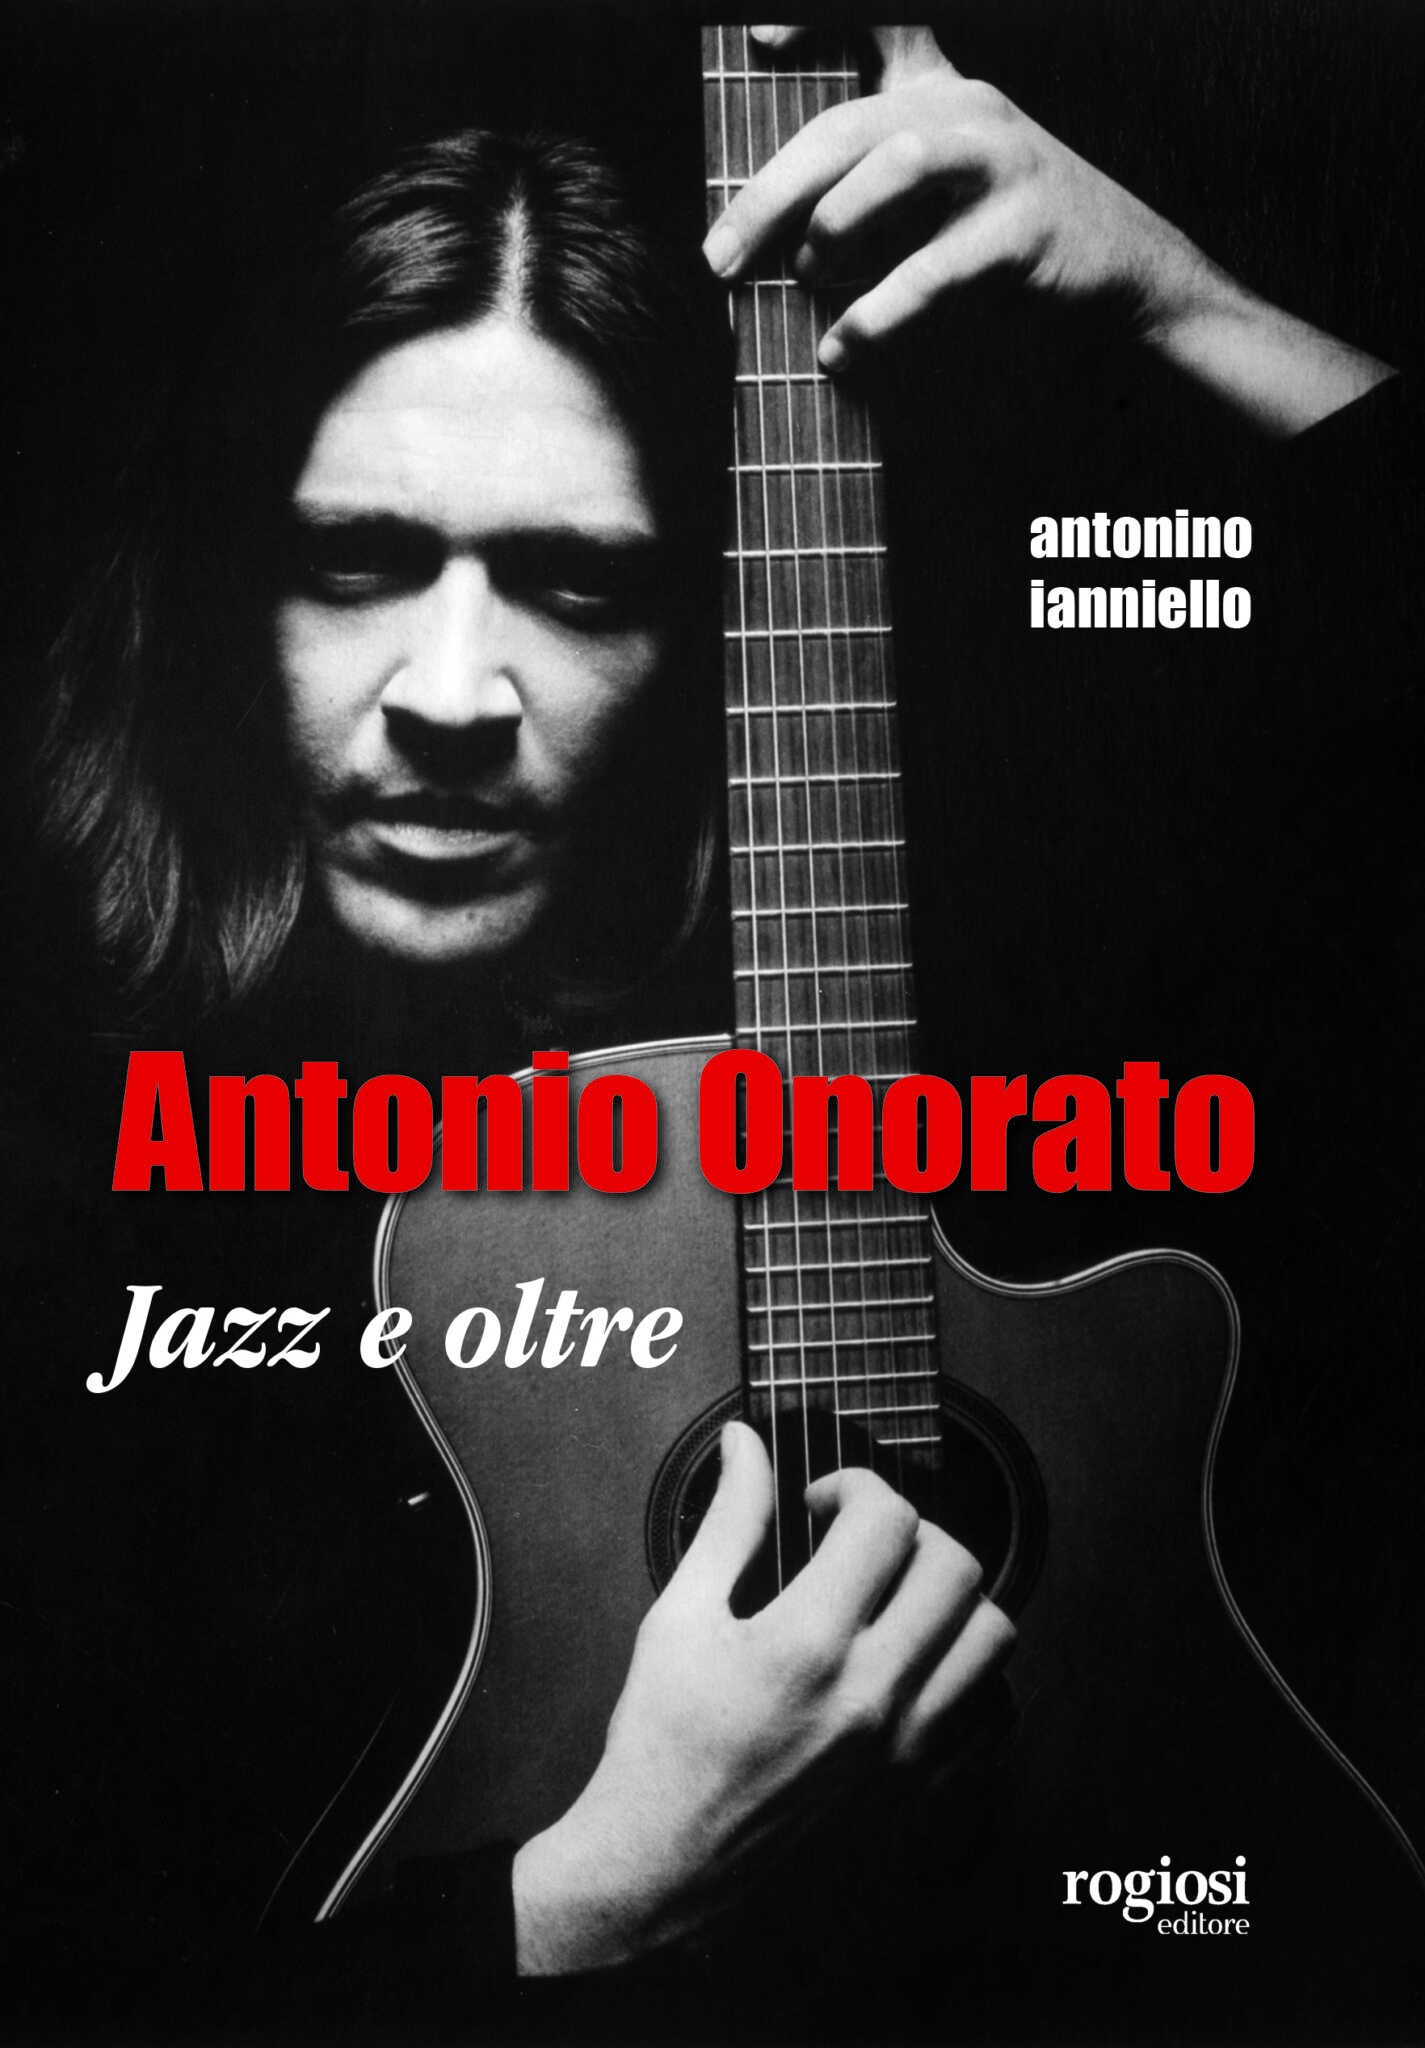 ‘Antonio Onorato. Jazz e oltre’ di Antonino Ianniello per Rogiosi Editore. Oggi a La Feltrinelli di Napoli